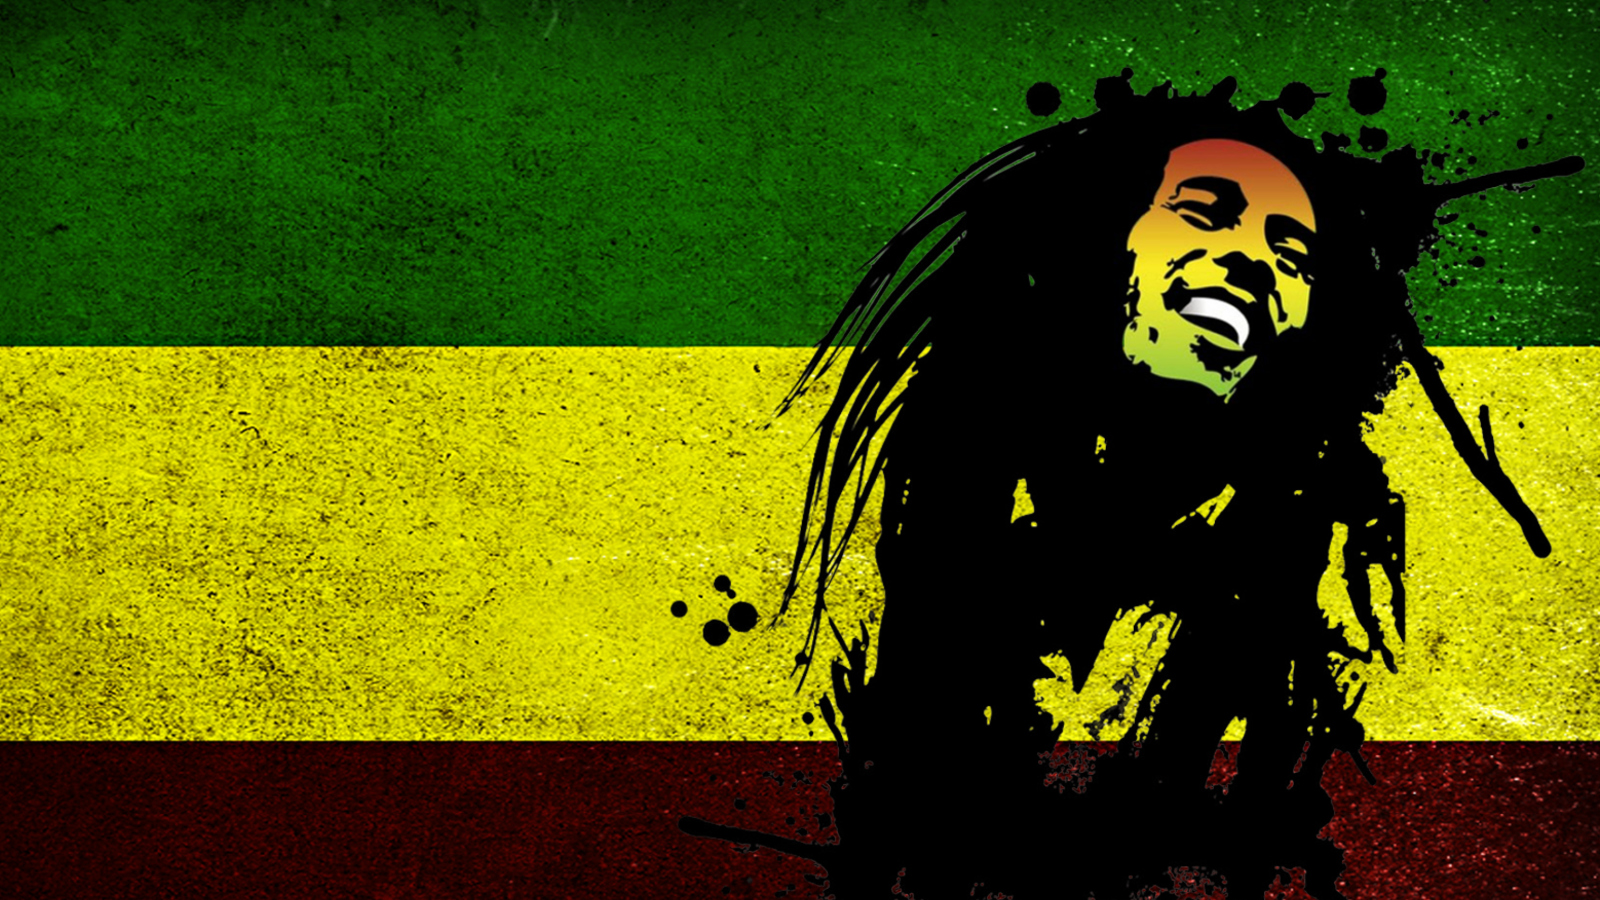 Bob Marley Rasta Reggae Culture wallpaper 1600x900